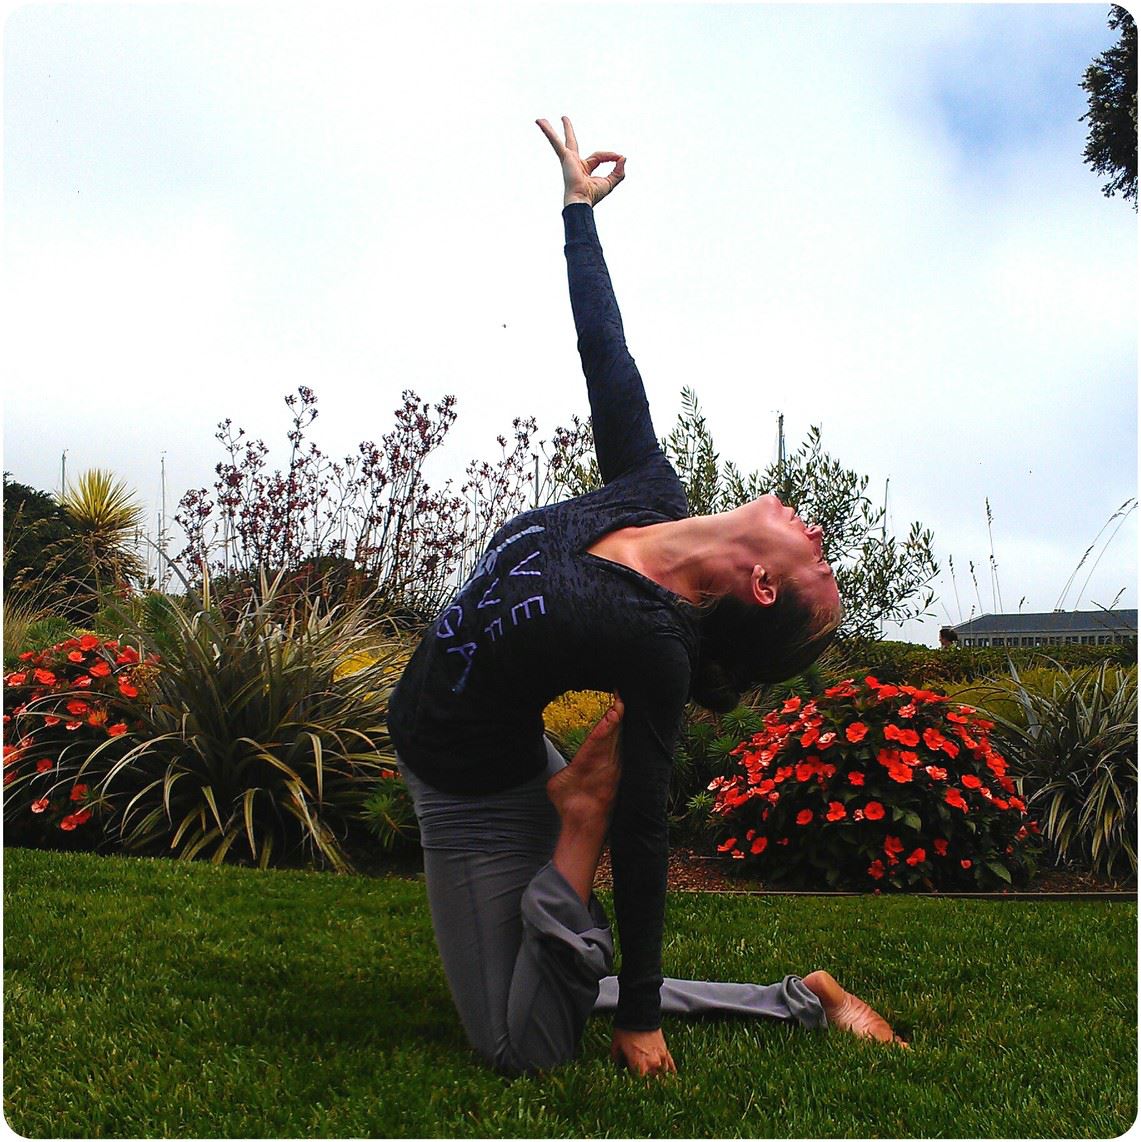 Yoga With Amanda — Amanda Manfredi Yoga and Photography